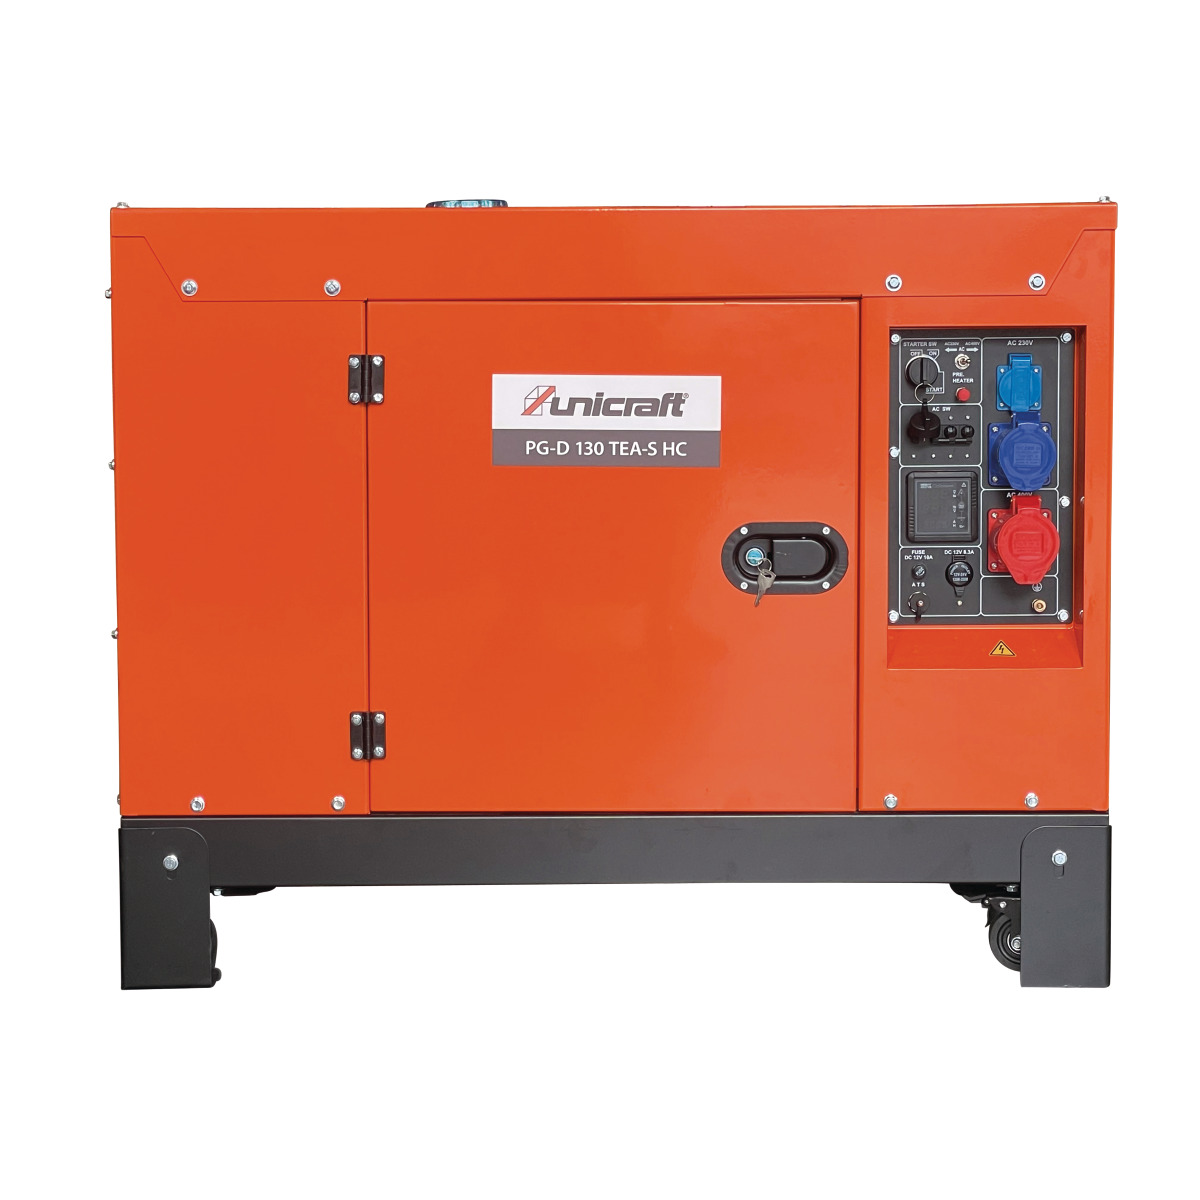  Unicraft Synchron Diesel Stromerzeuger PG-D 130 TEA-S HC, für die Hauseinspeisung geeignet 